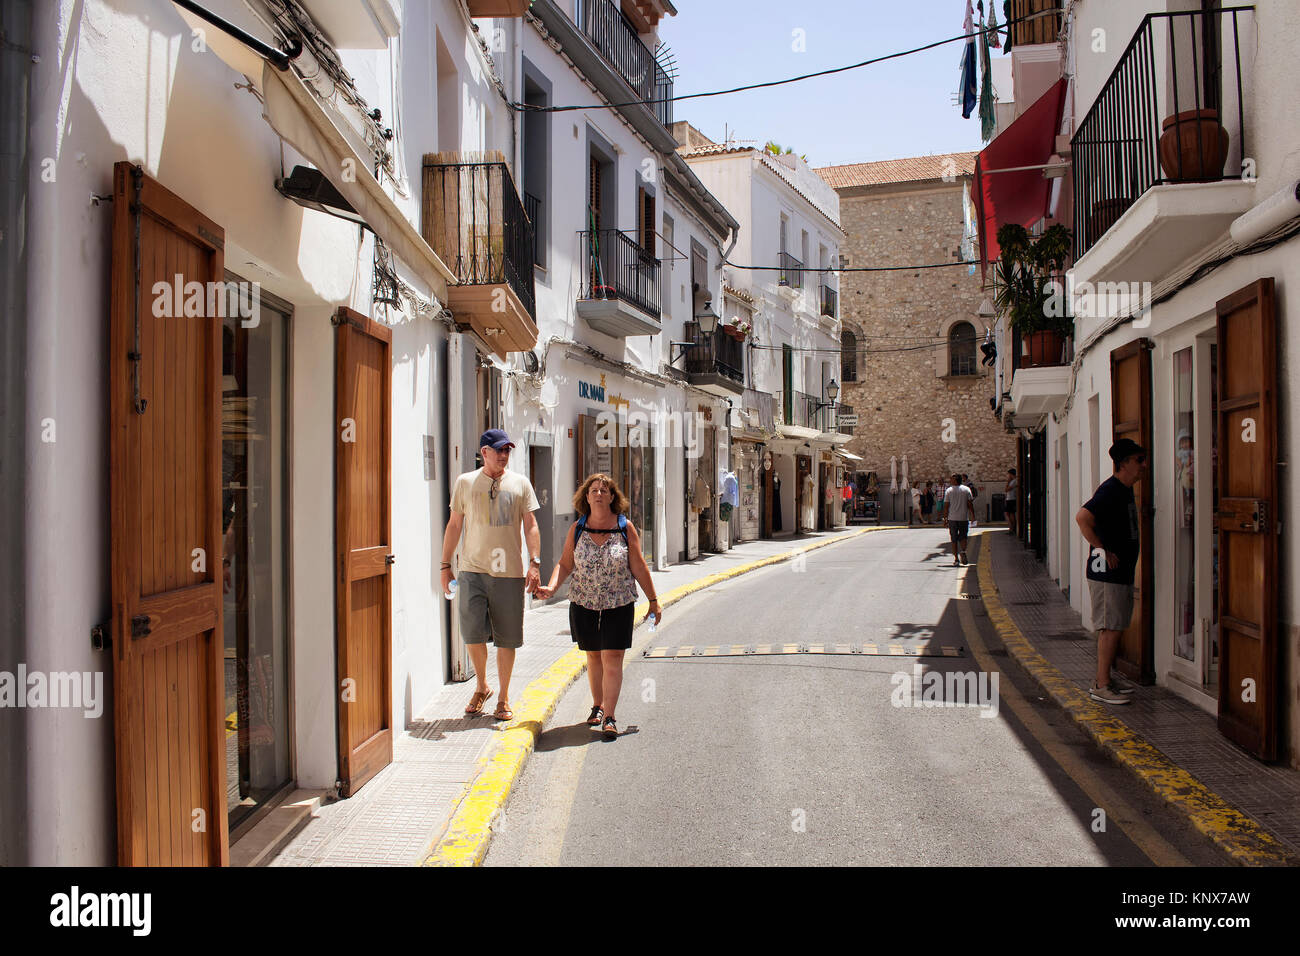 Alte paar Spaziergang in einer Einkaufsstraße in Ibiza. Es ist eine der balearischen Inseln, eine Inselgruppe Spaniens im Mittelmeer. Stockfoto